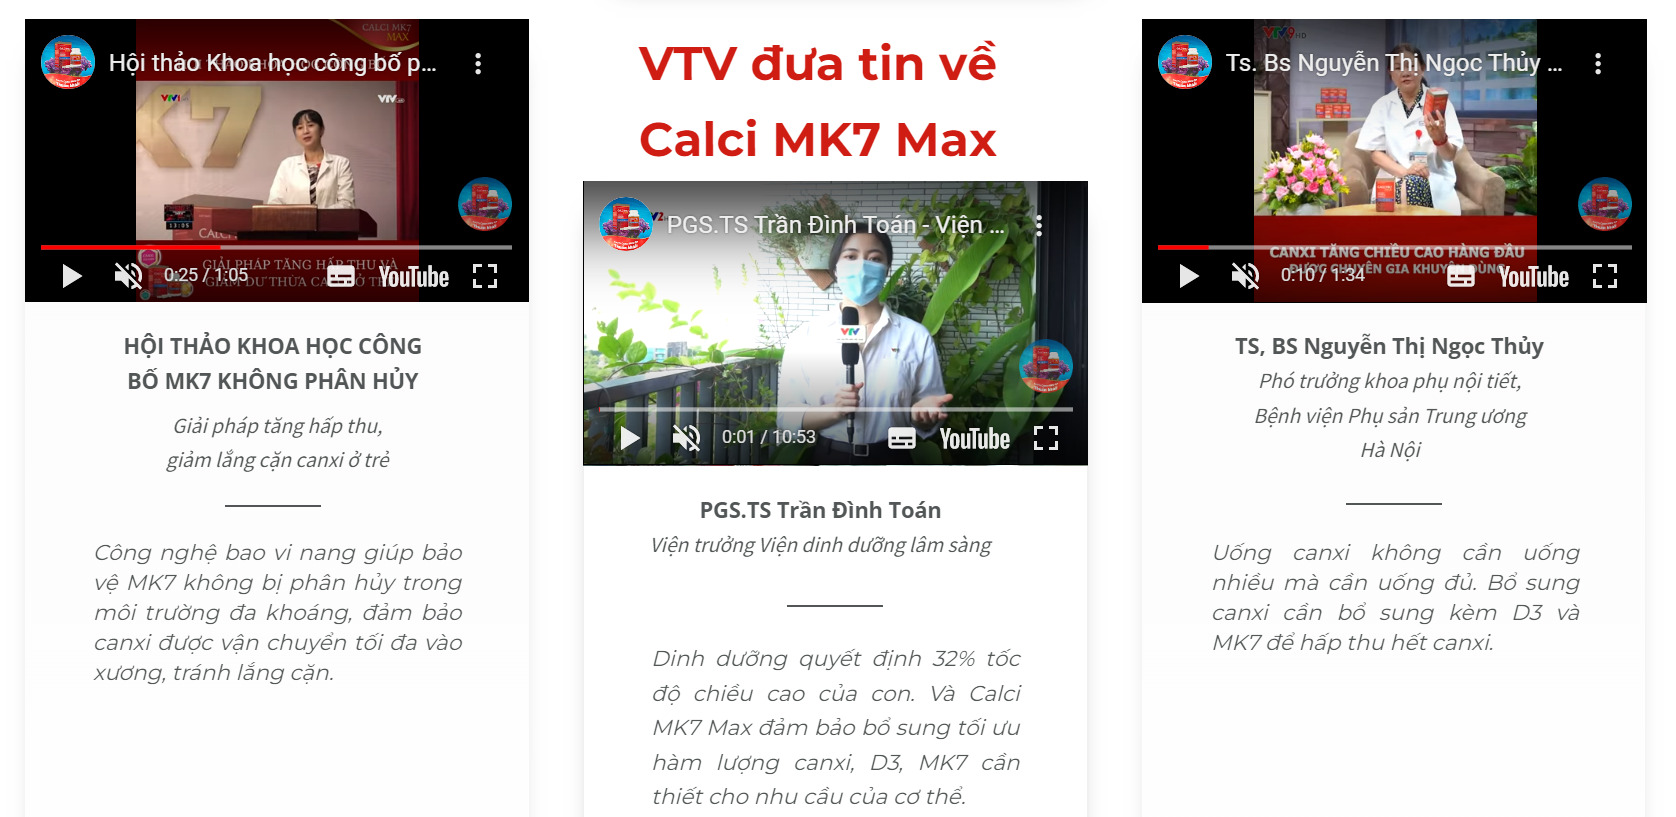 Báo chí đưa tin về sản phẩm Calci MK7 Max 